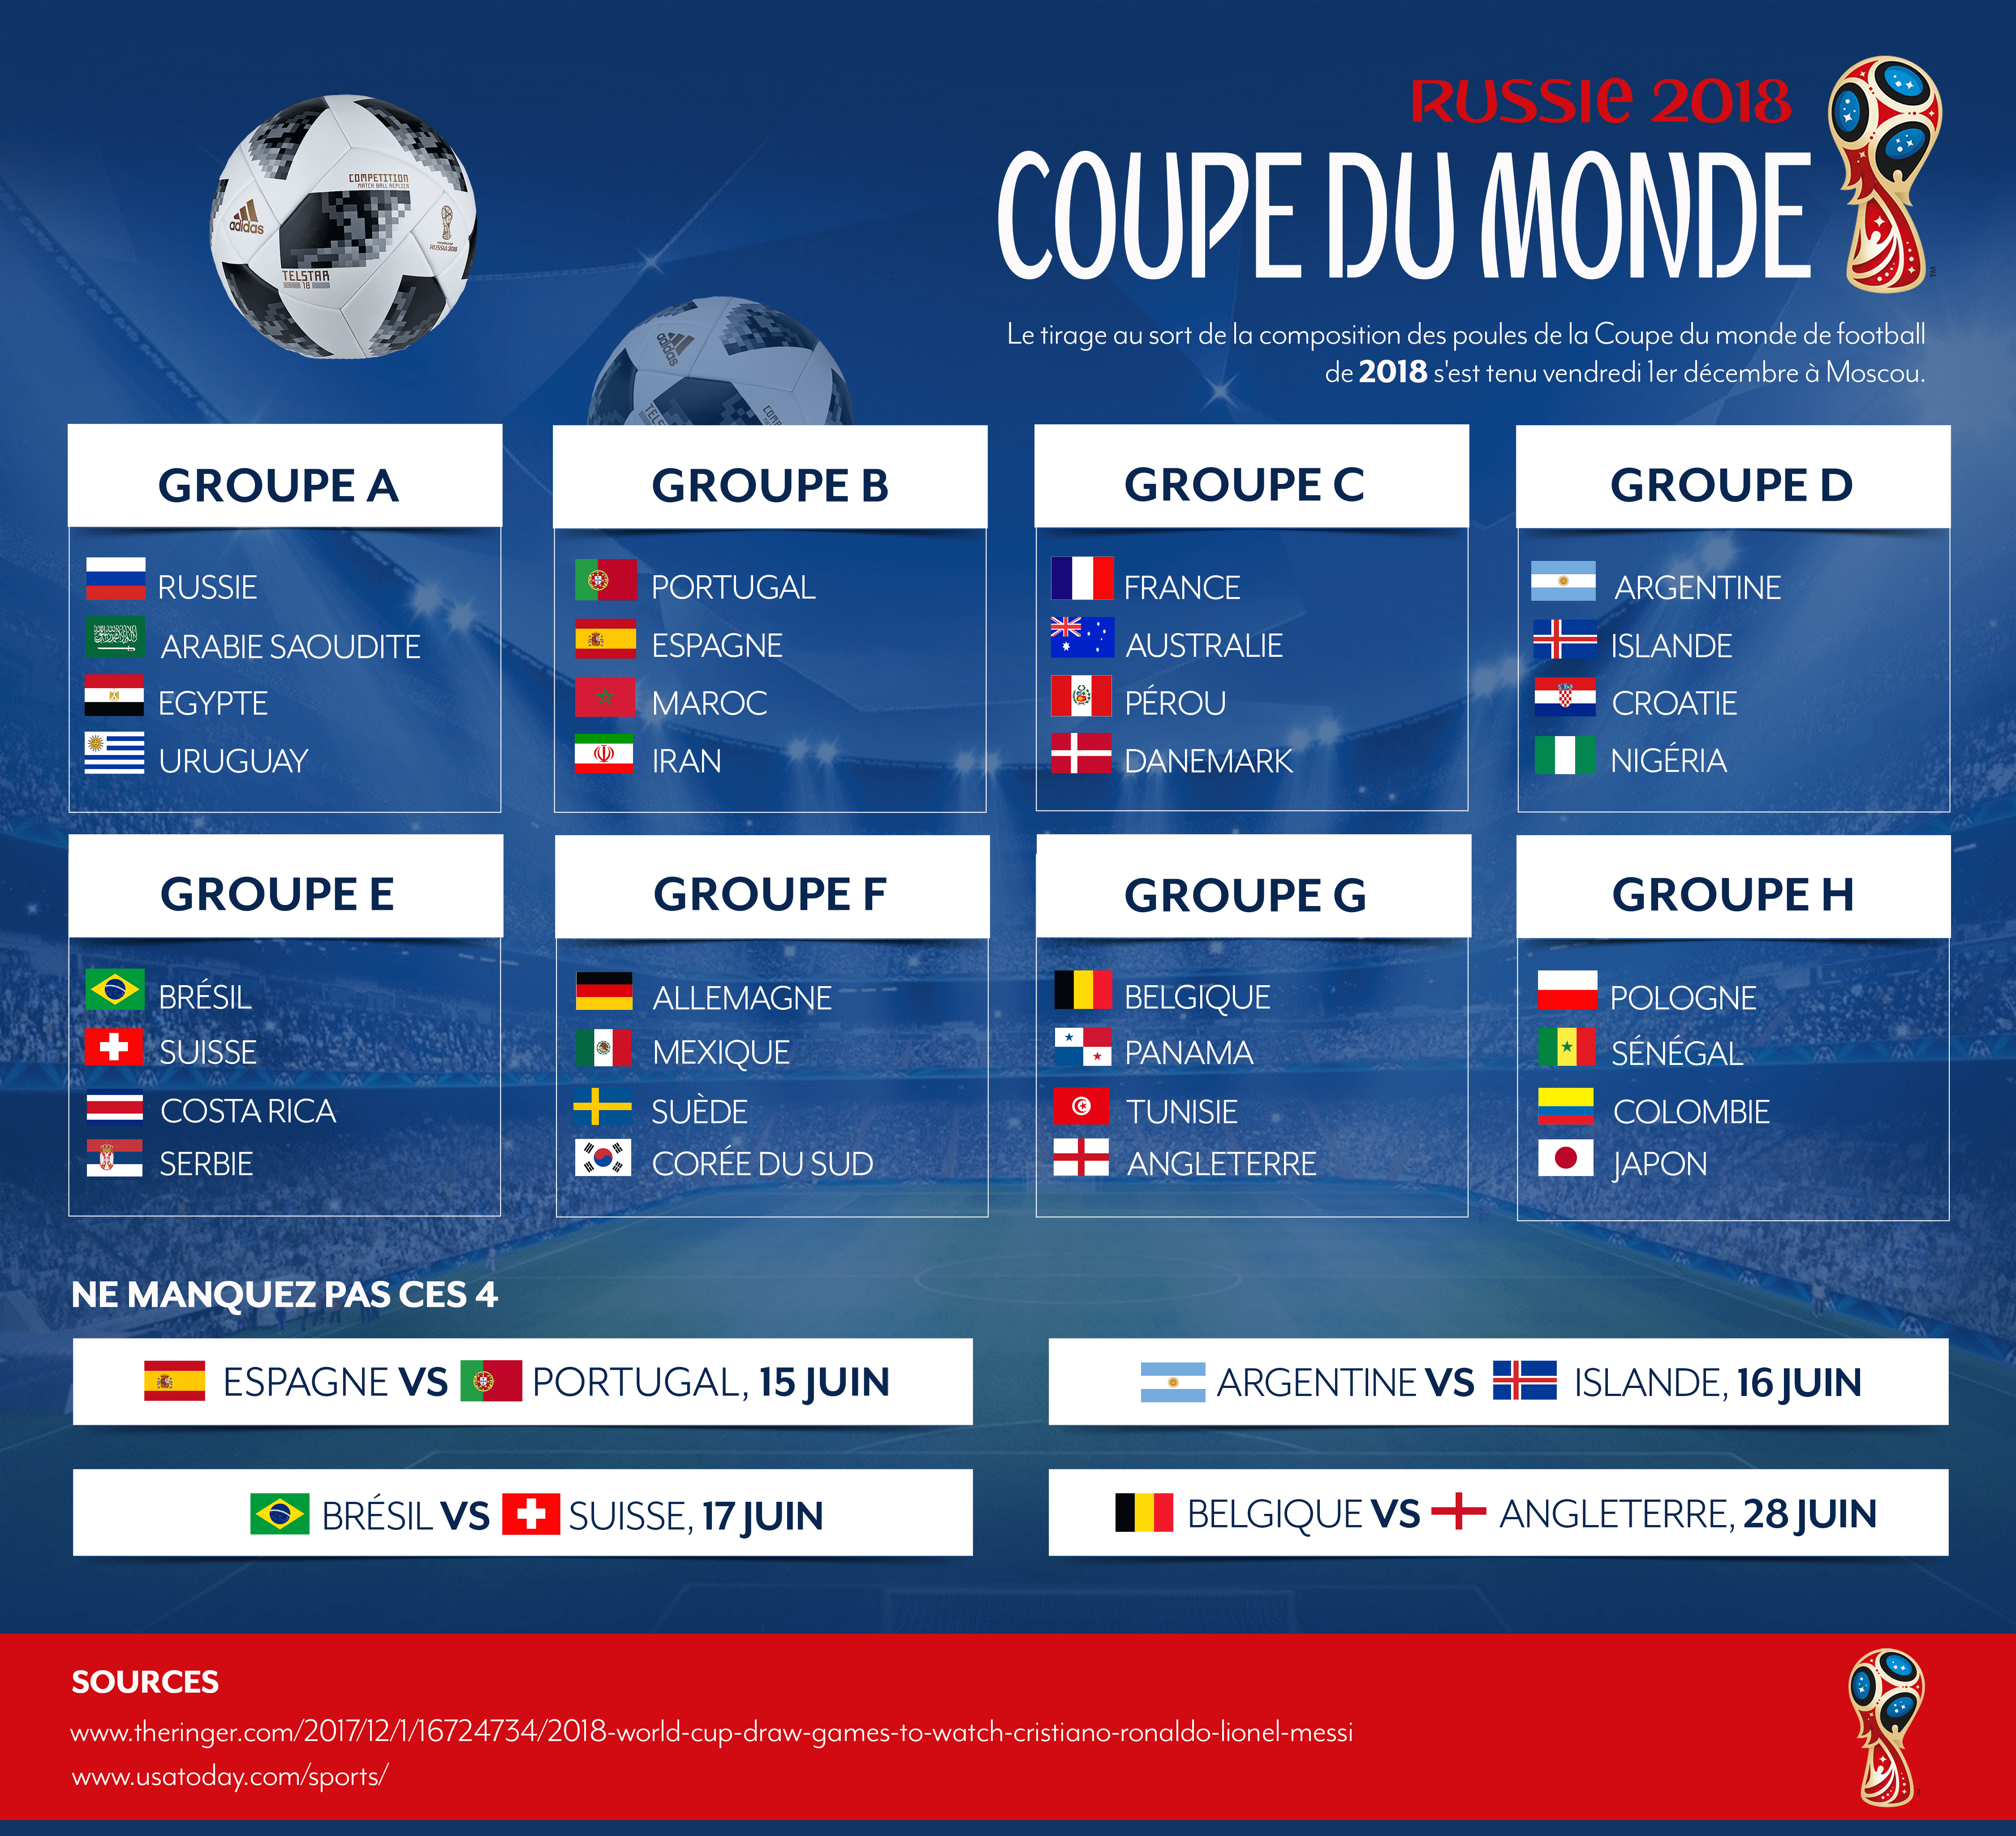 Le Groupe C et le match France VS Australie du 16 juin ...